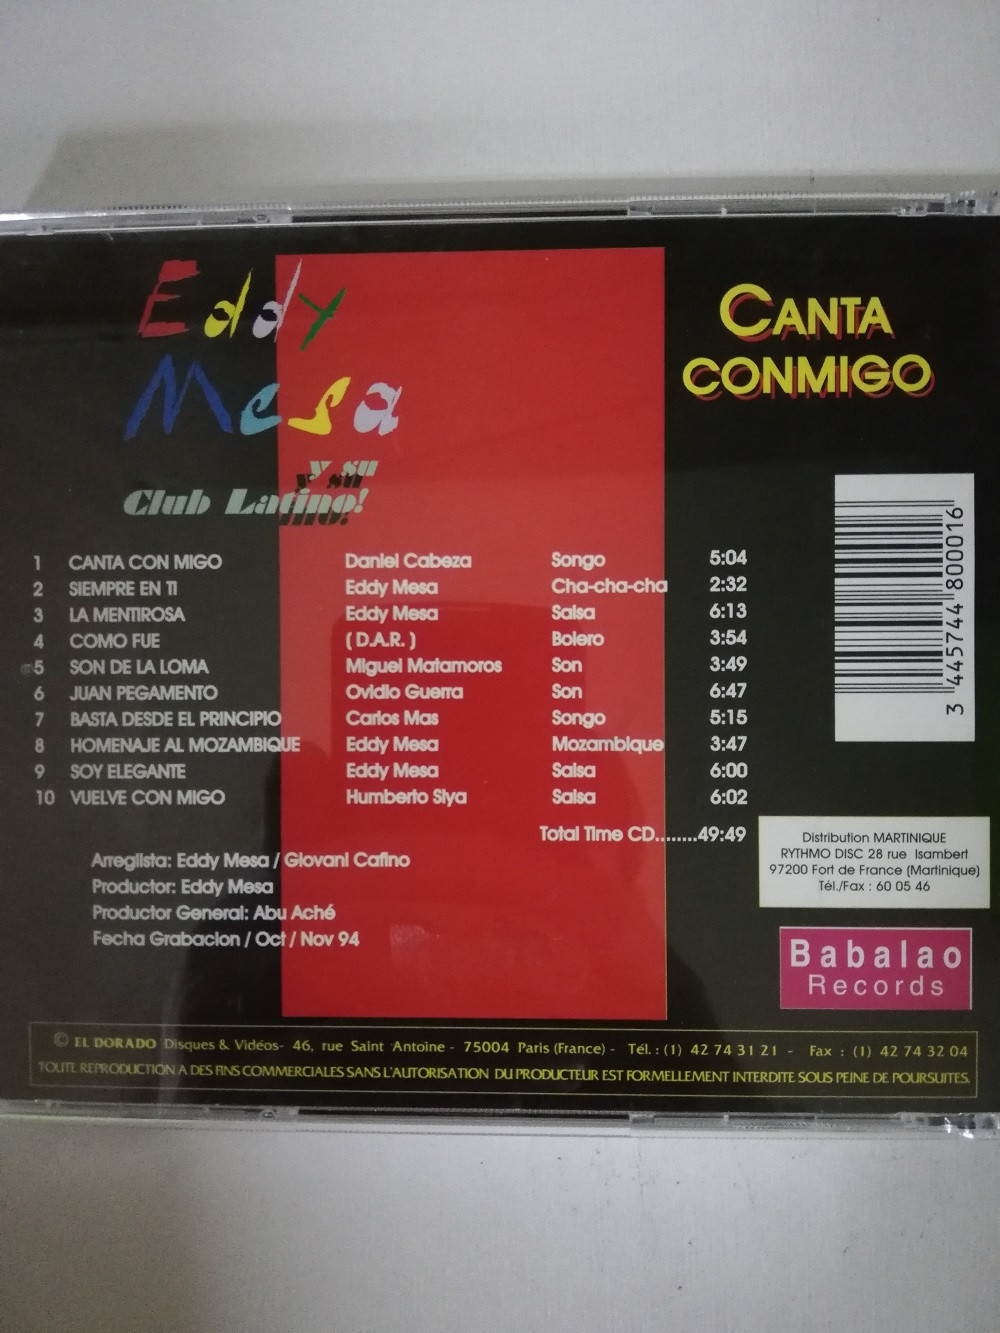 Imagen CD EDDY MESA Y SU CLUB LATINO - CANTA CONMIGO  2